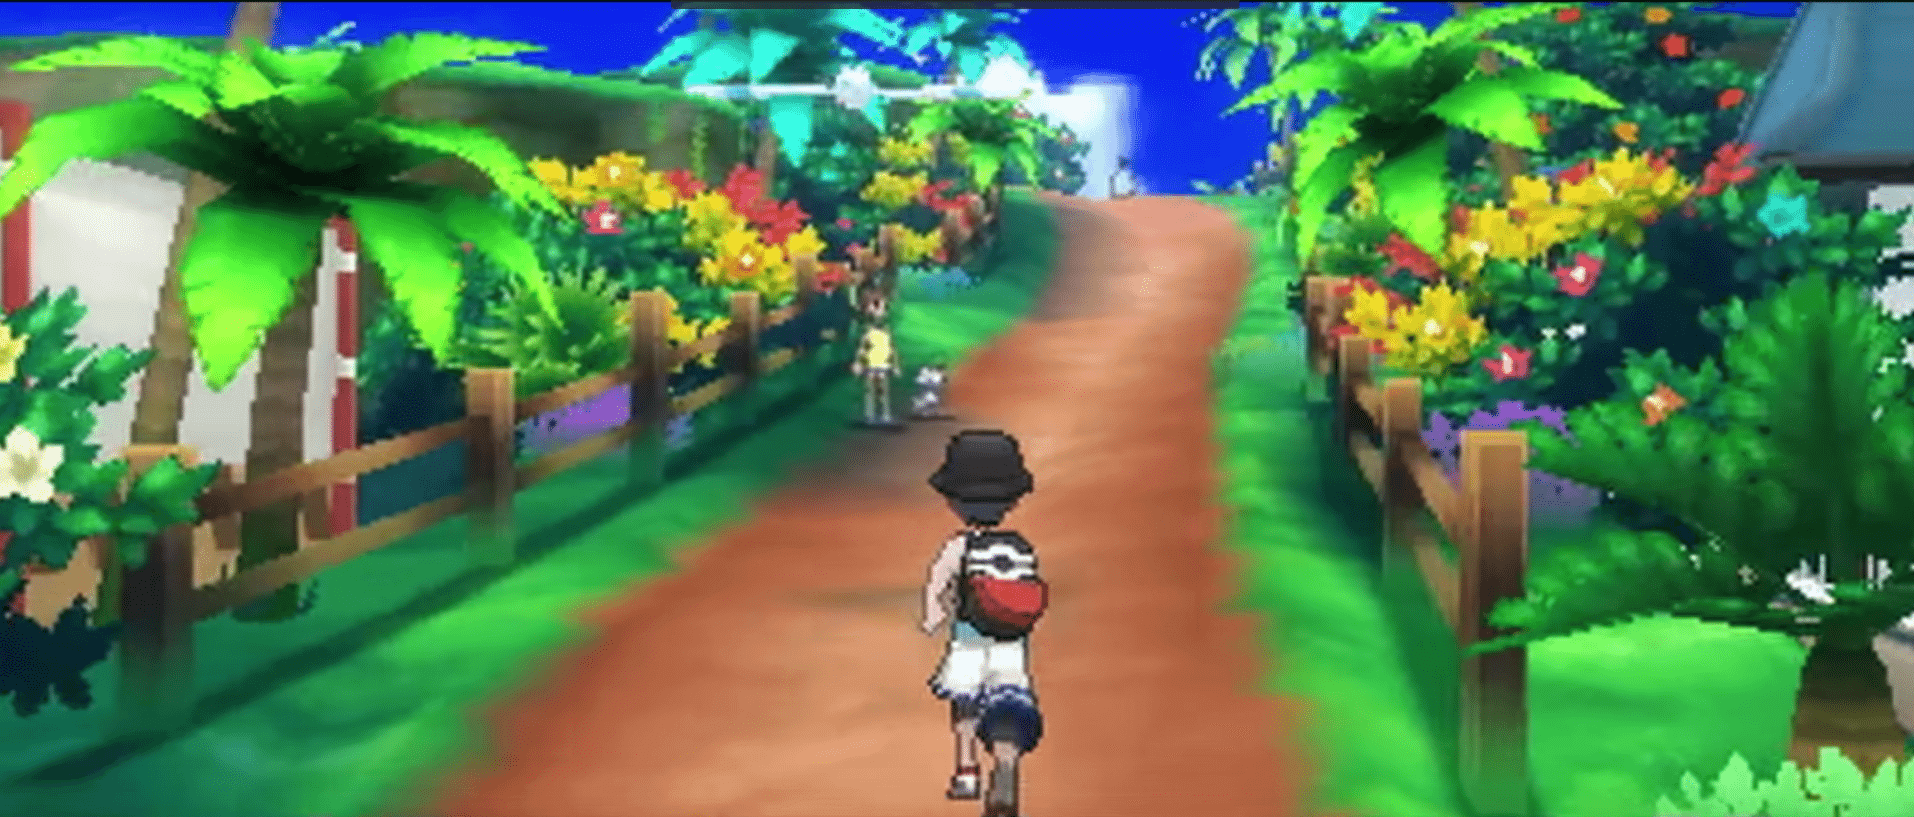 Pokémon ultra sun & ultra moon para nintendo 3ds e pokkén tournament para switch são anunciados